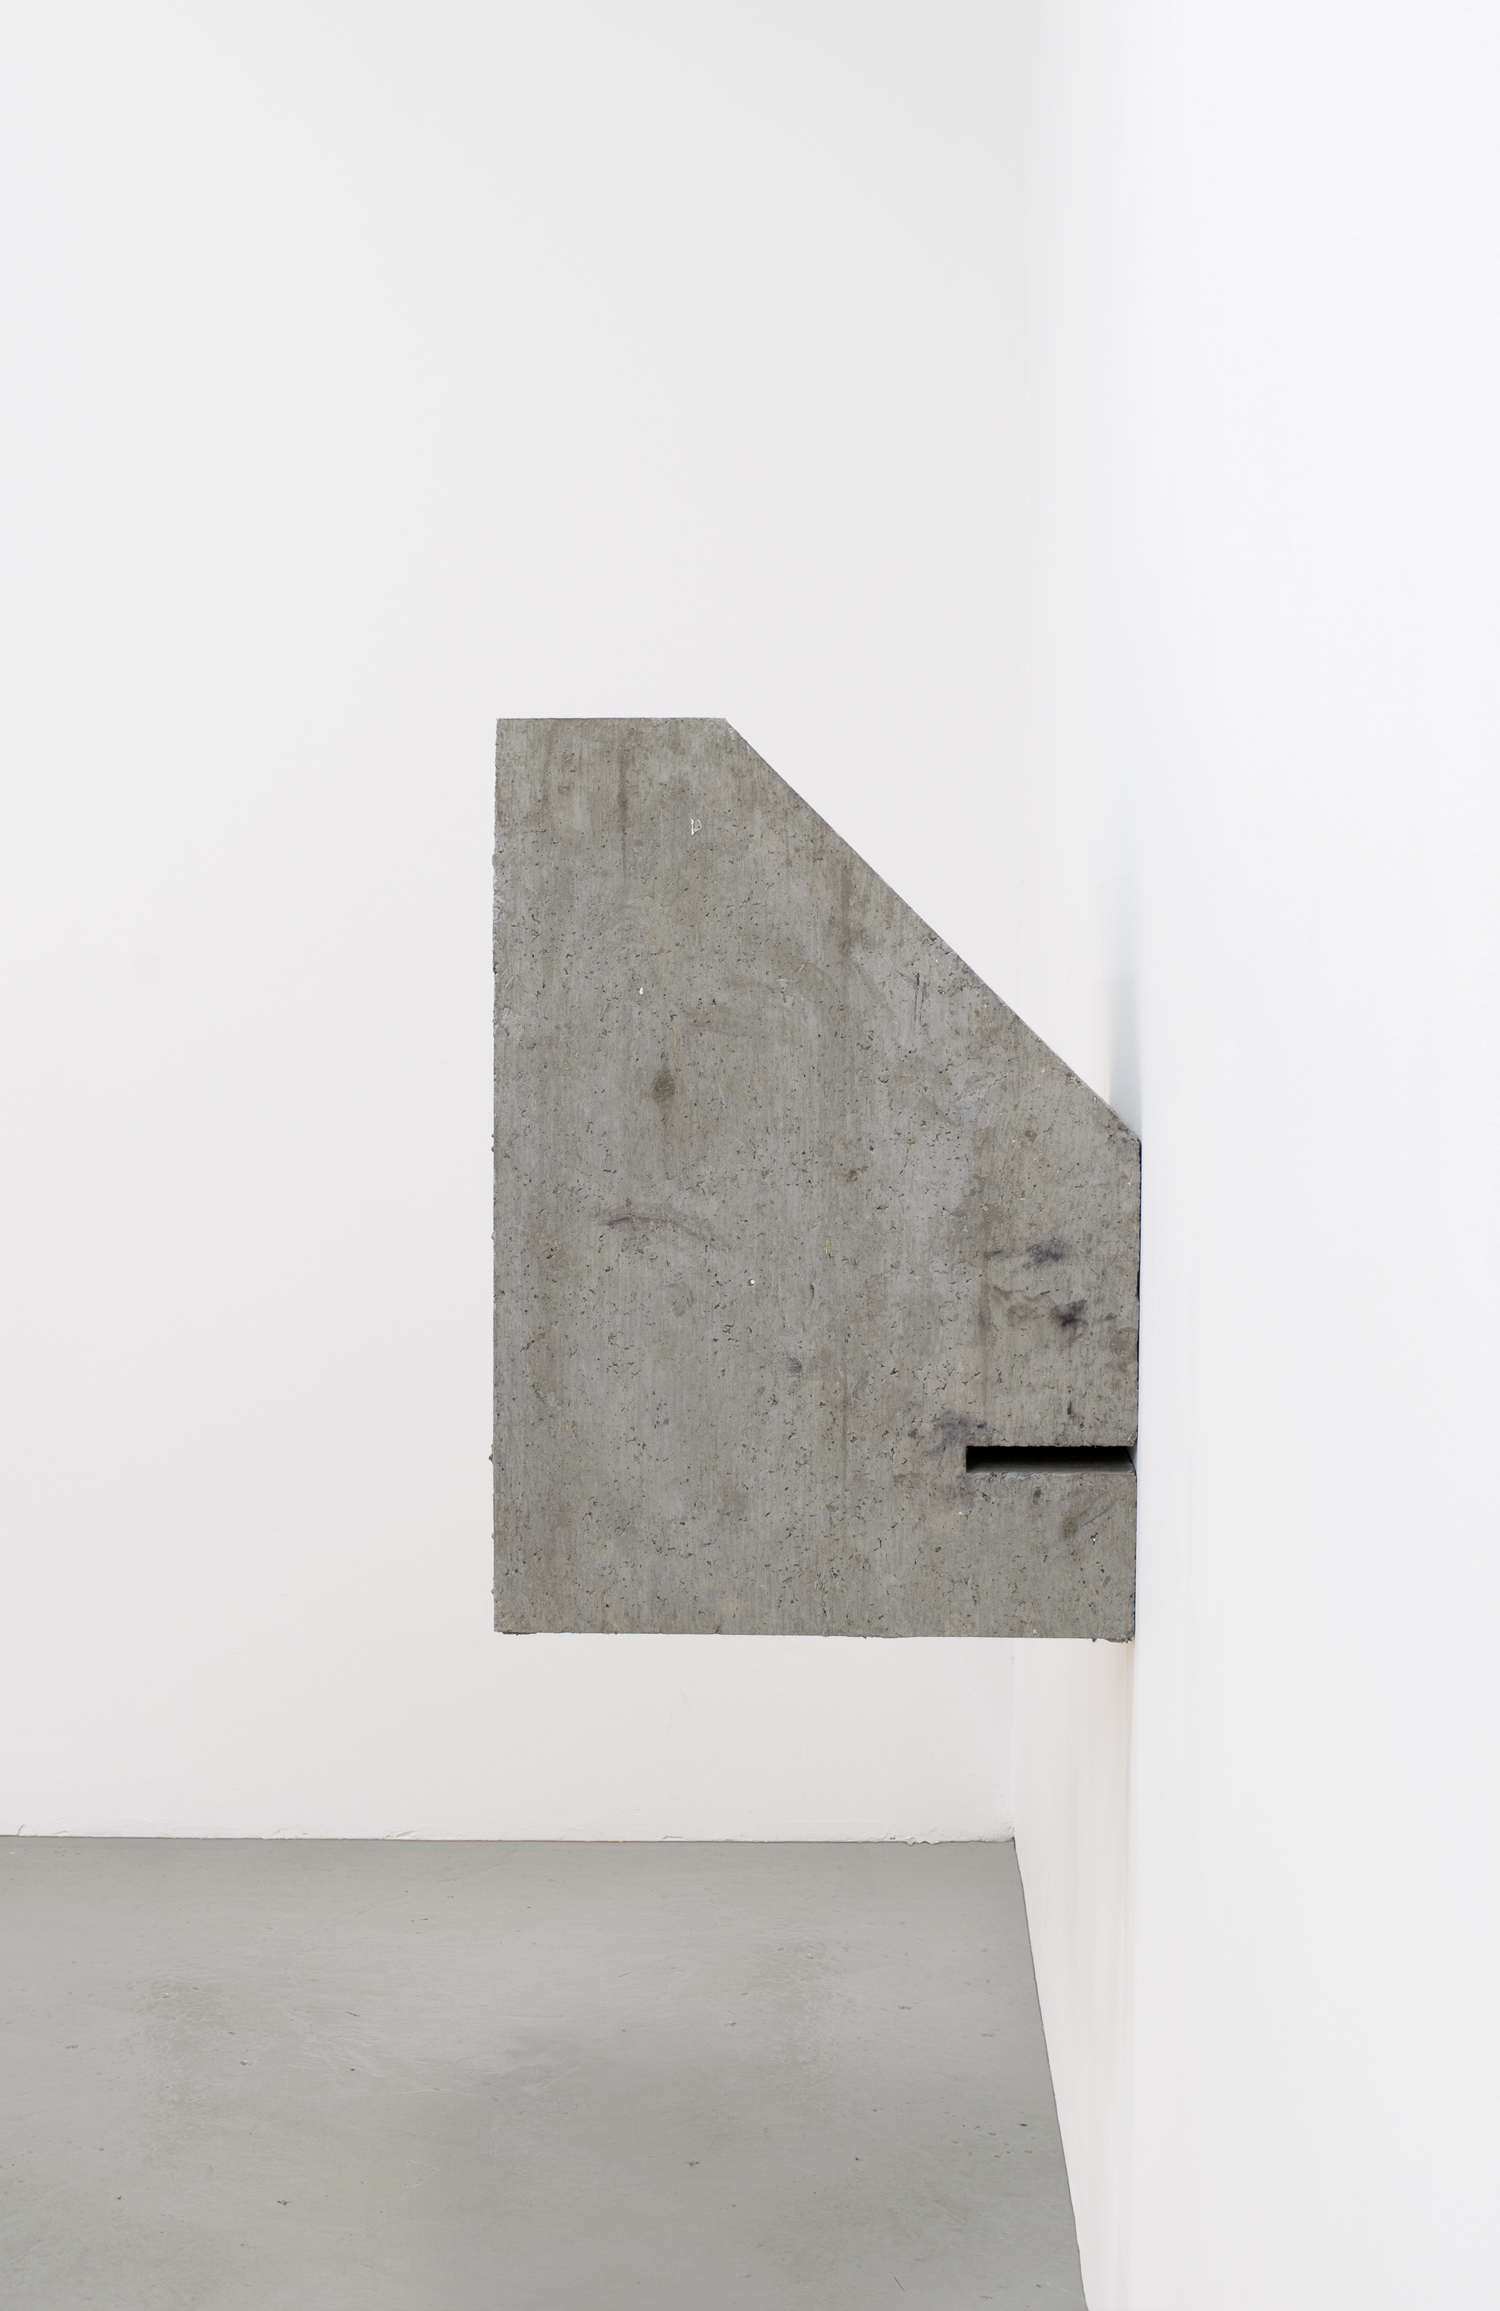   Limik , 2017, papier maché, concrete, and gesso, 26 x 18 x 15 in 